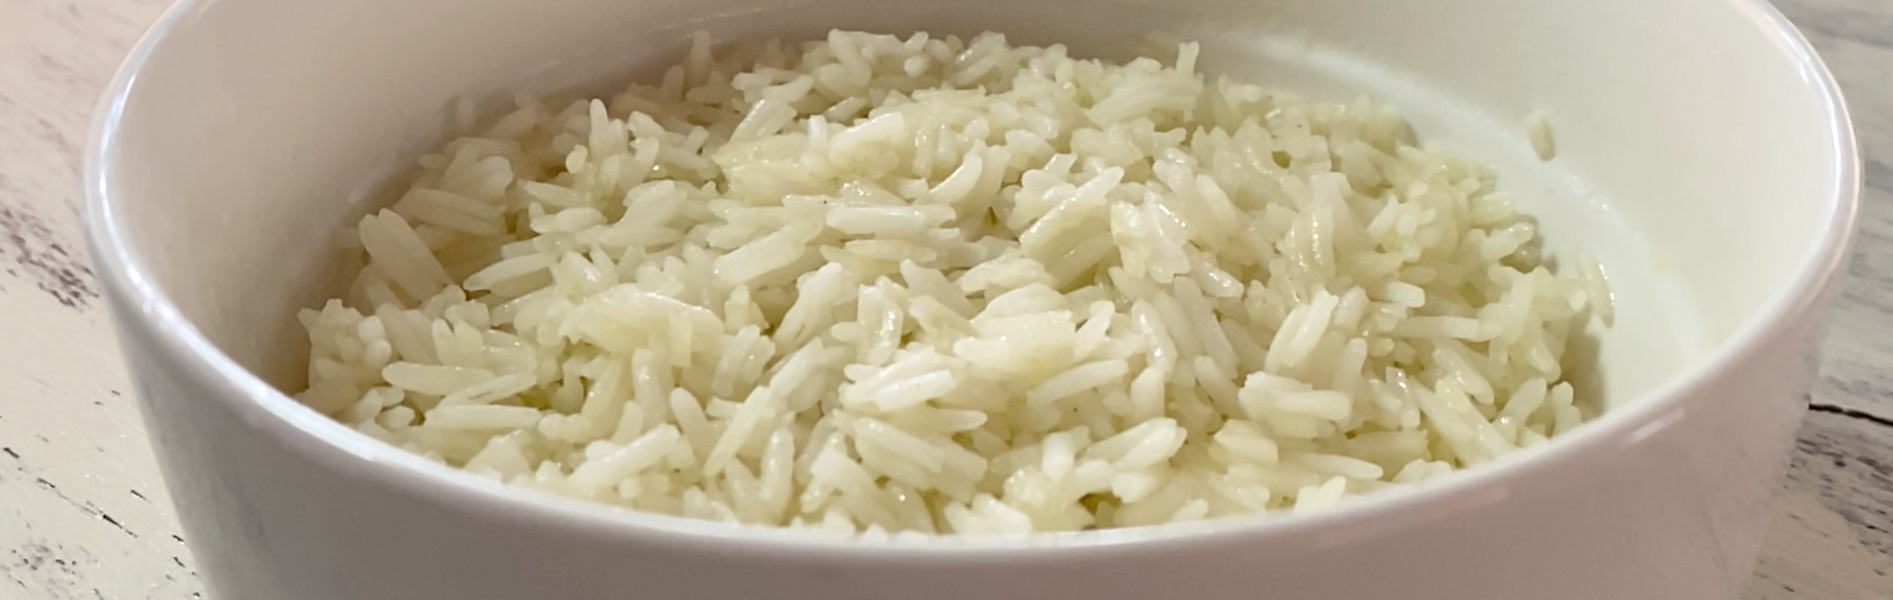 ¿Cómo preparar arroz?